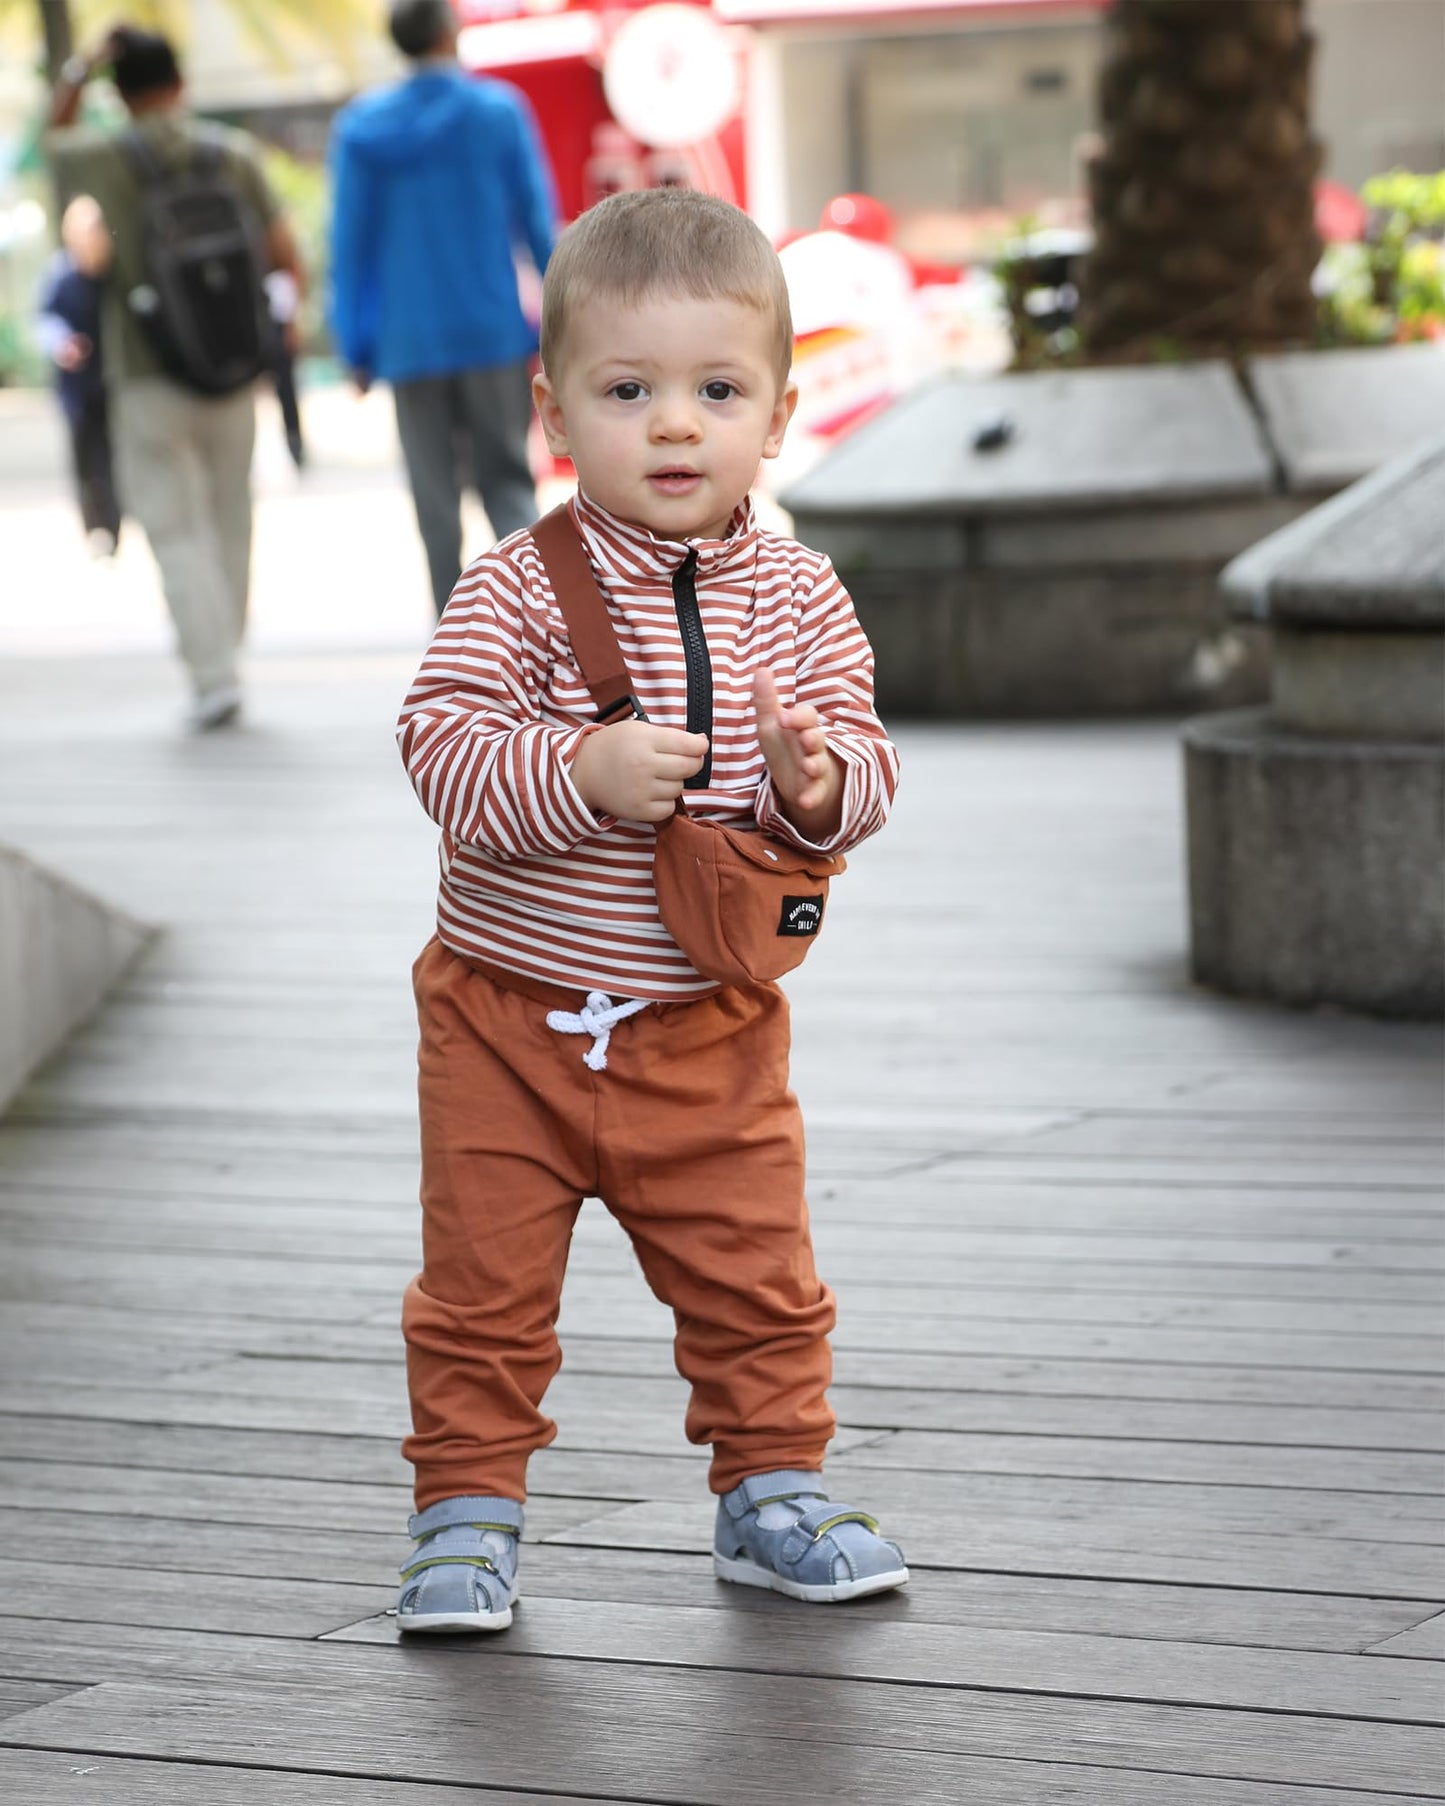 NZRVAWS Baby Boys Baby Boy Clothes toddler boy clothes 6-12M